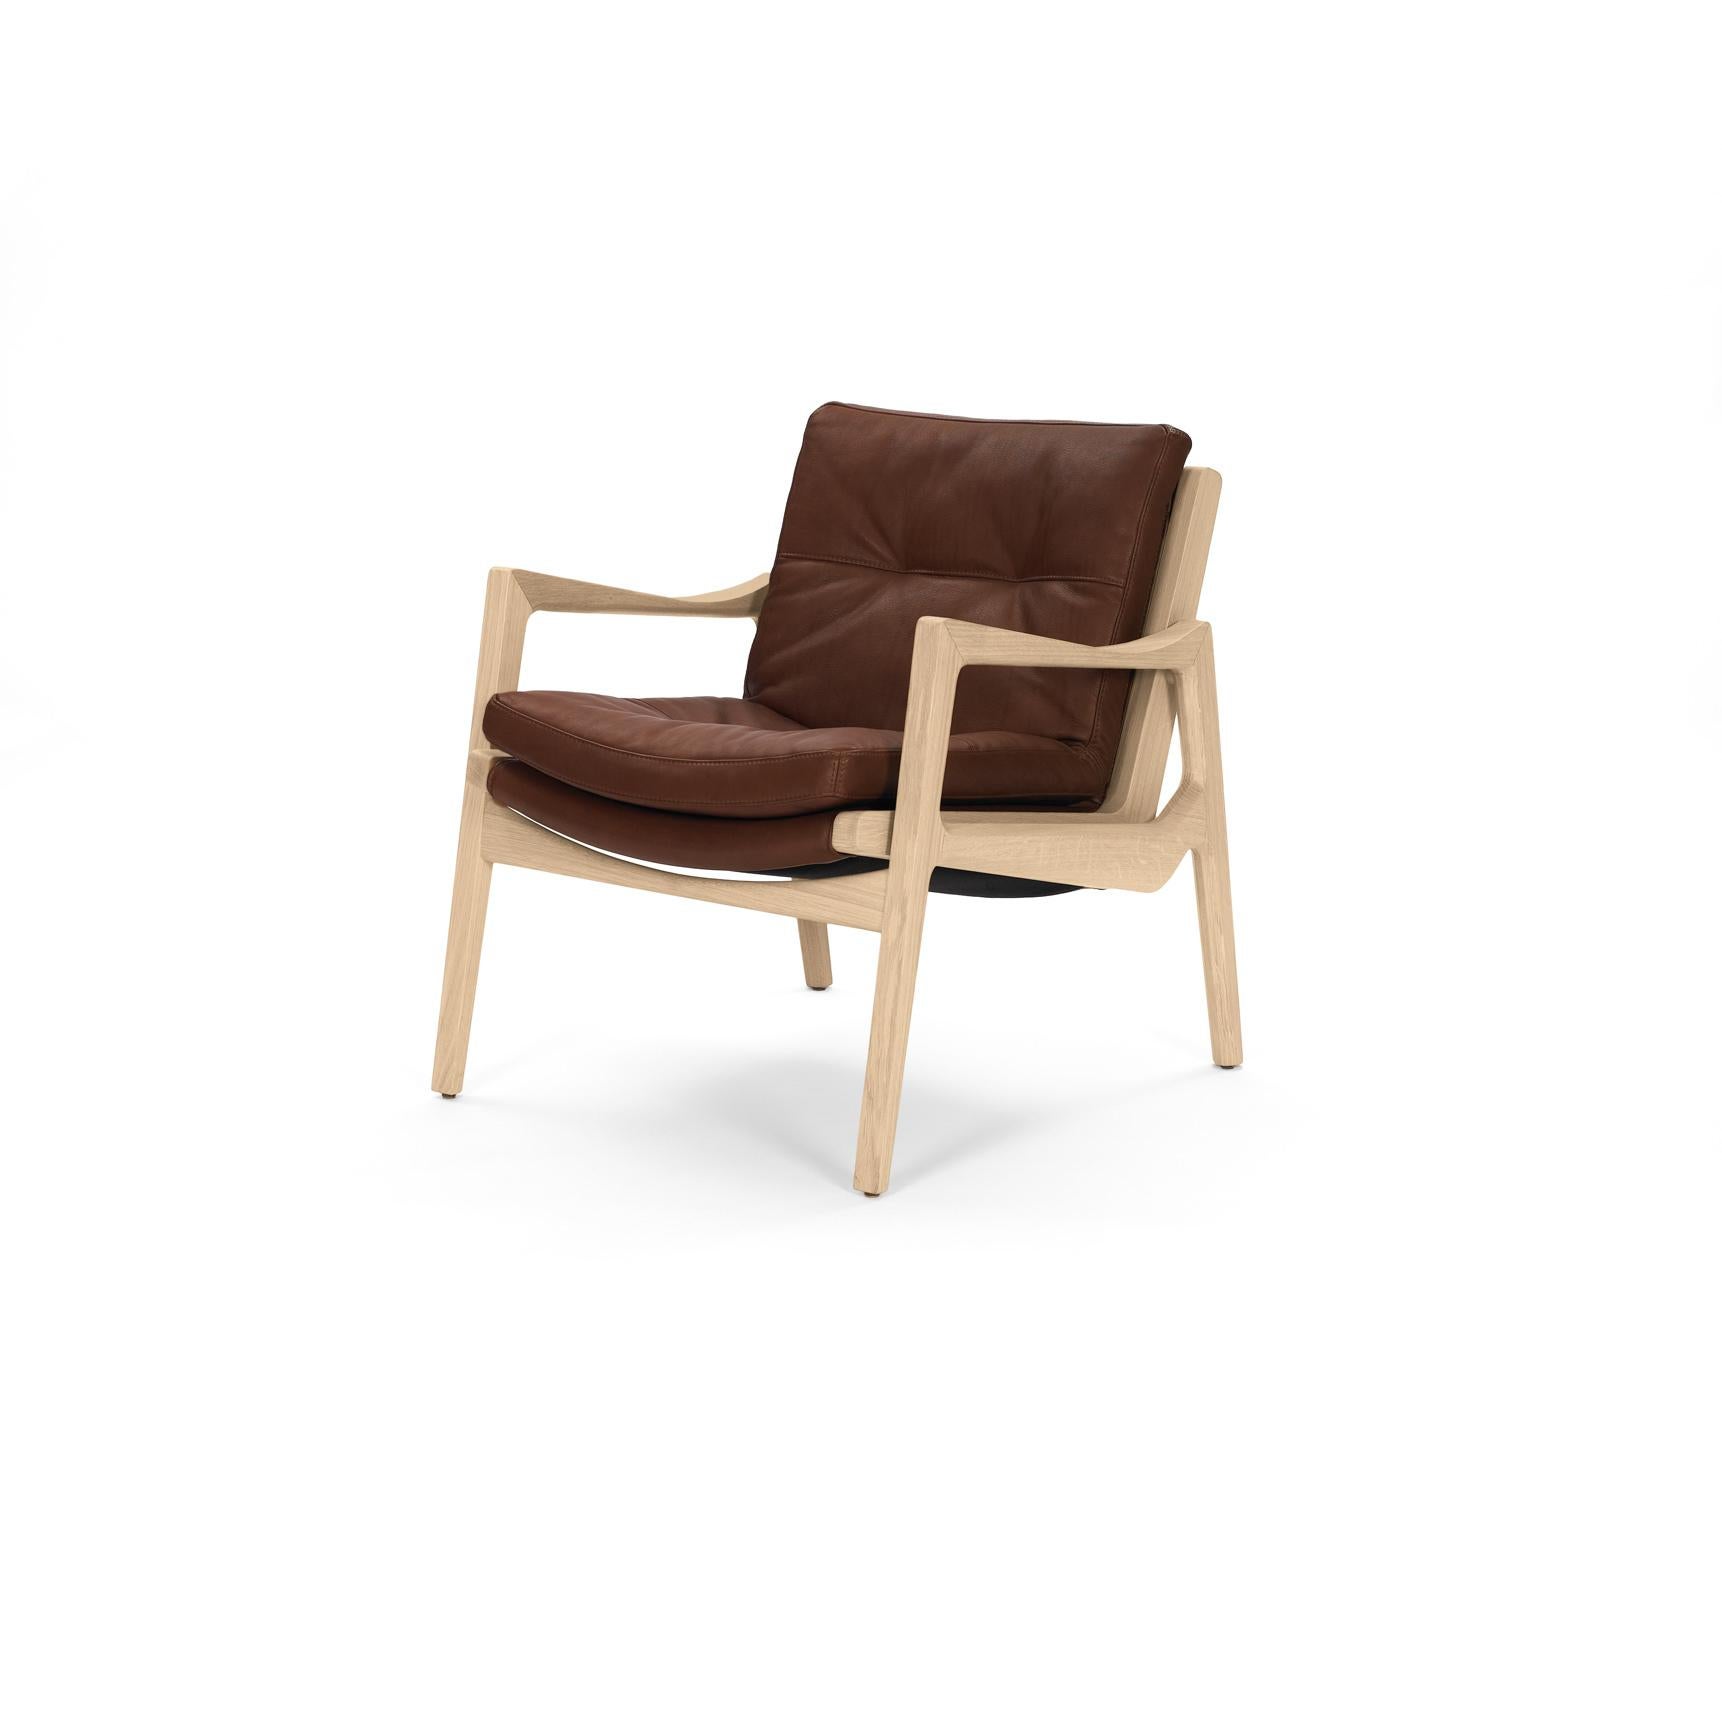 Avec la chaise longue Euvira, Jader Almeida poursuit la tradition des grands maîtres brésiliens du design des années 1960 et 1970 avec une aisance supérieure ; en même temps, il trouve sa propre expression individuelle et contemporaine d'une chaise